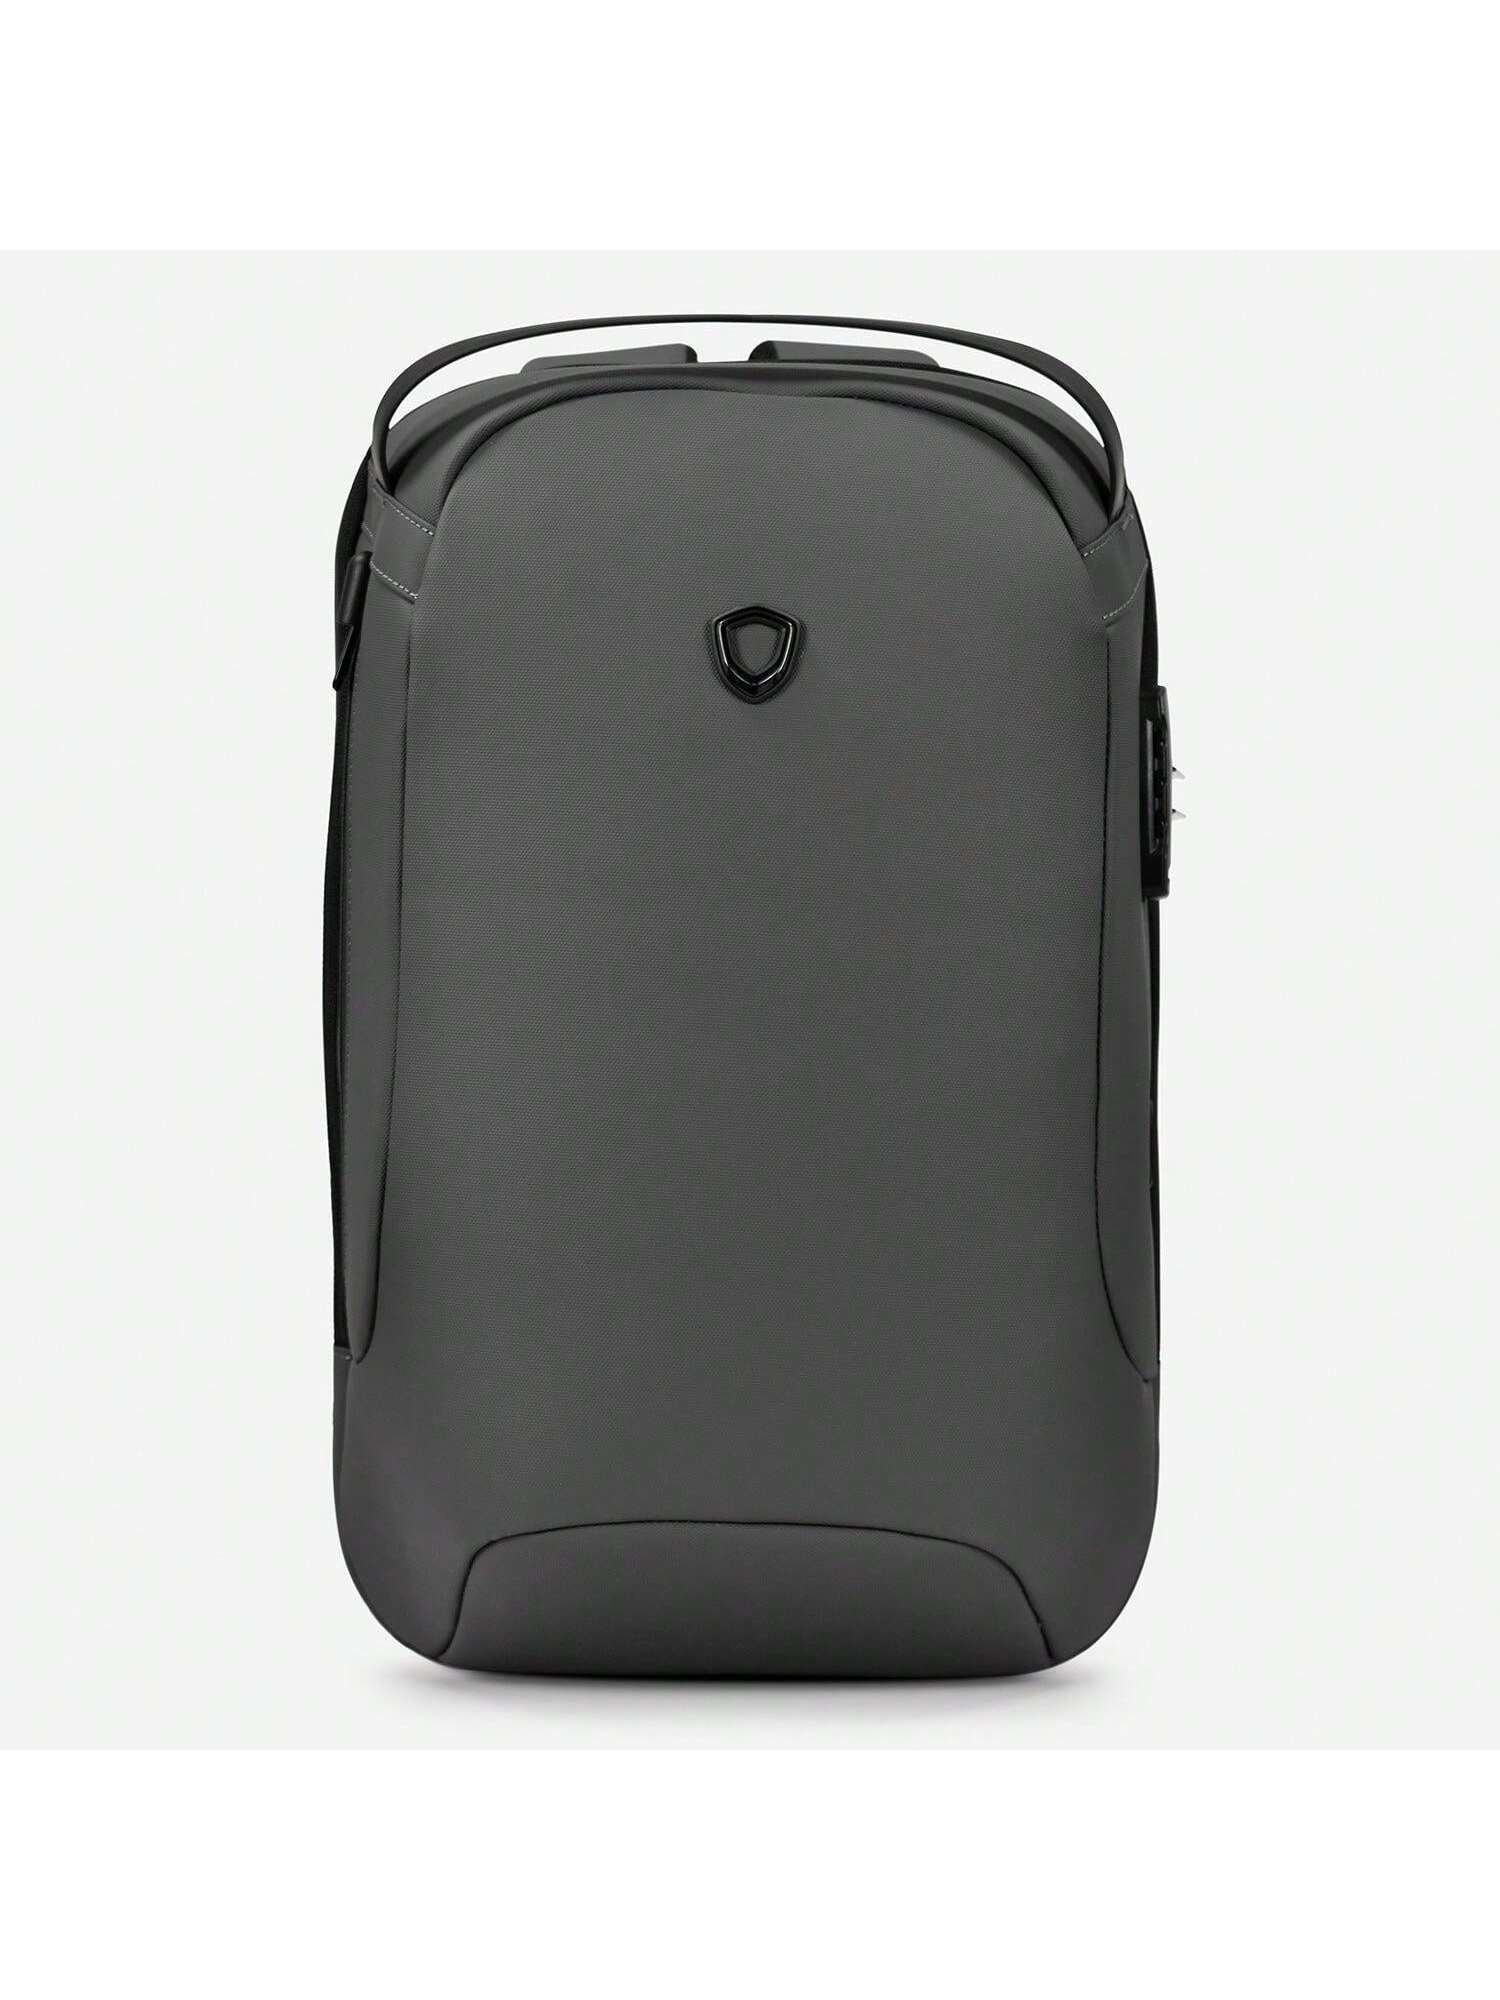 Матовый водостойкий рюкзак Frailey с USB-портом и кодовым замком, серый рюкзак рик и морти черный с usb портом 3